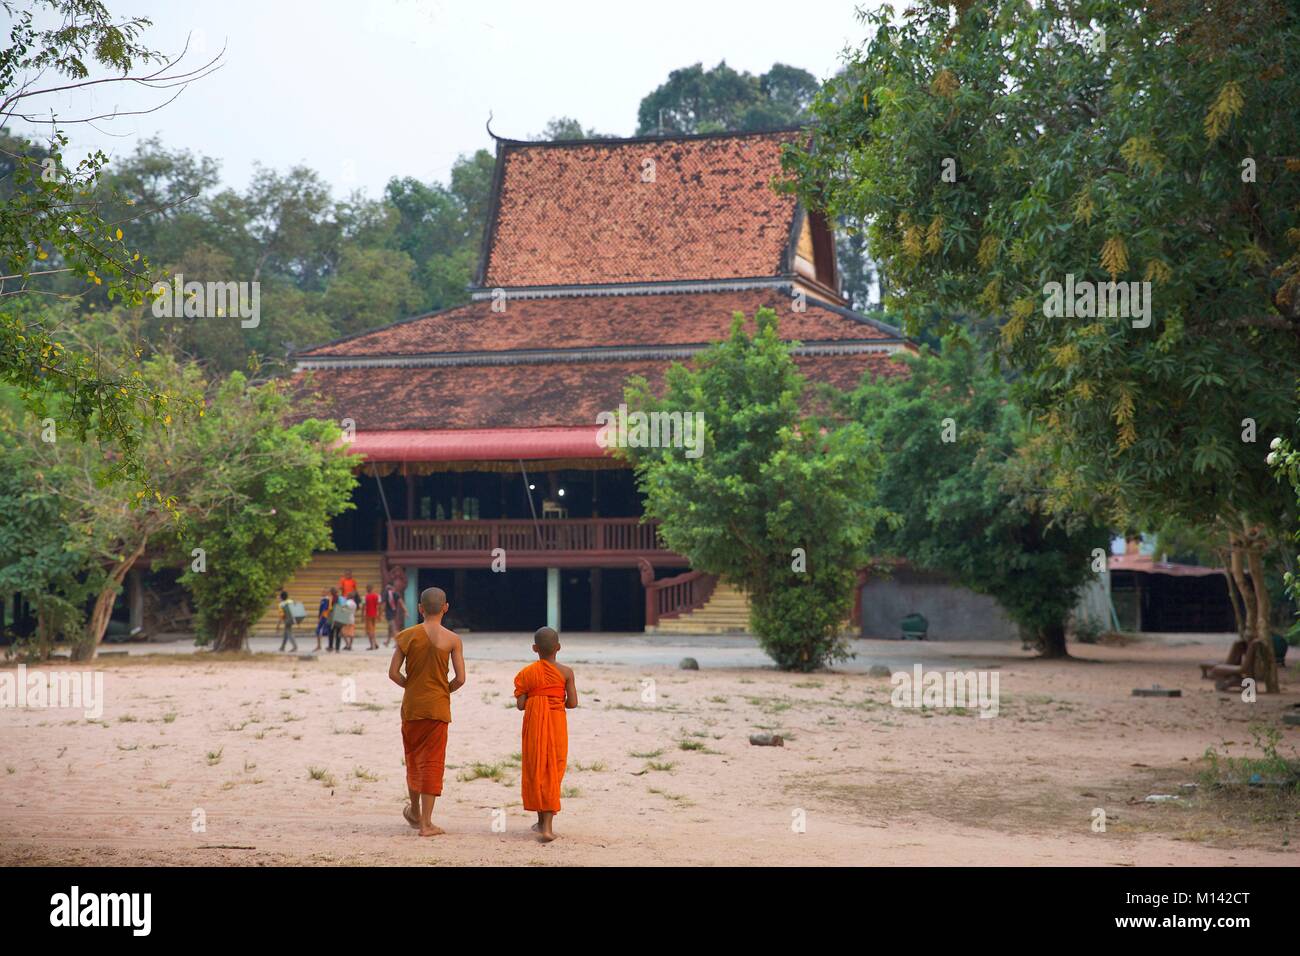 Cambogia Angkor, elencato come patrimonio mondiale dall' UNESCO, bambini monaci tornare indietro a piedi in un monastero buddist nei pressi di Angkor Wat bacino, il più grande tempio della vecchia città Khmer di Angkor Thom Foto Stock